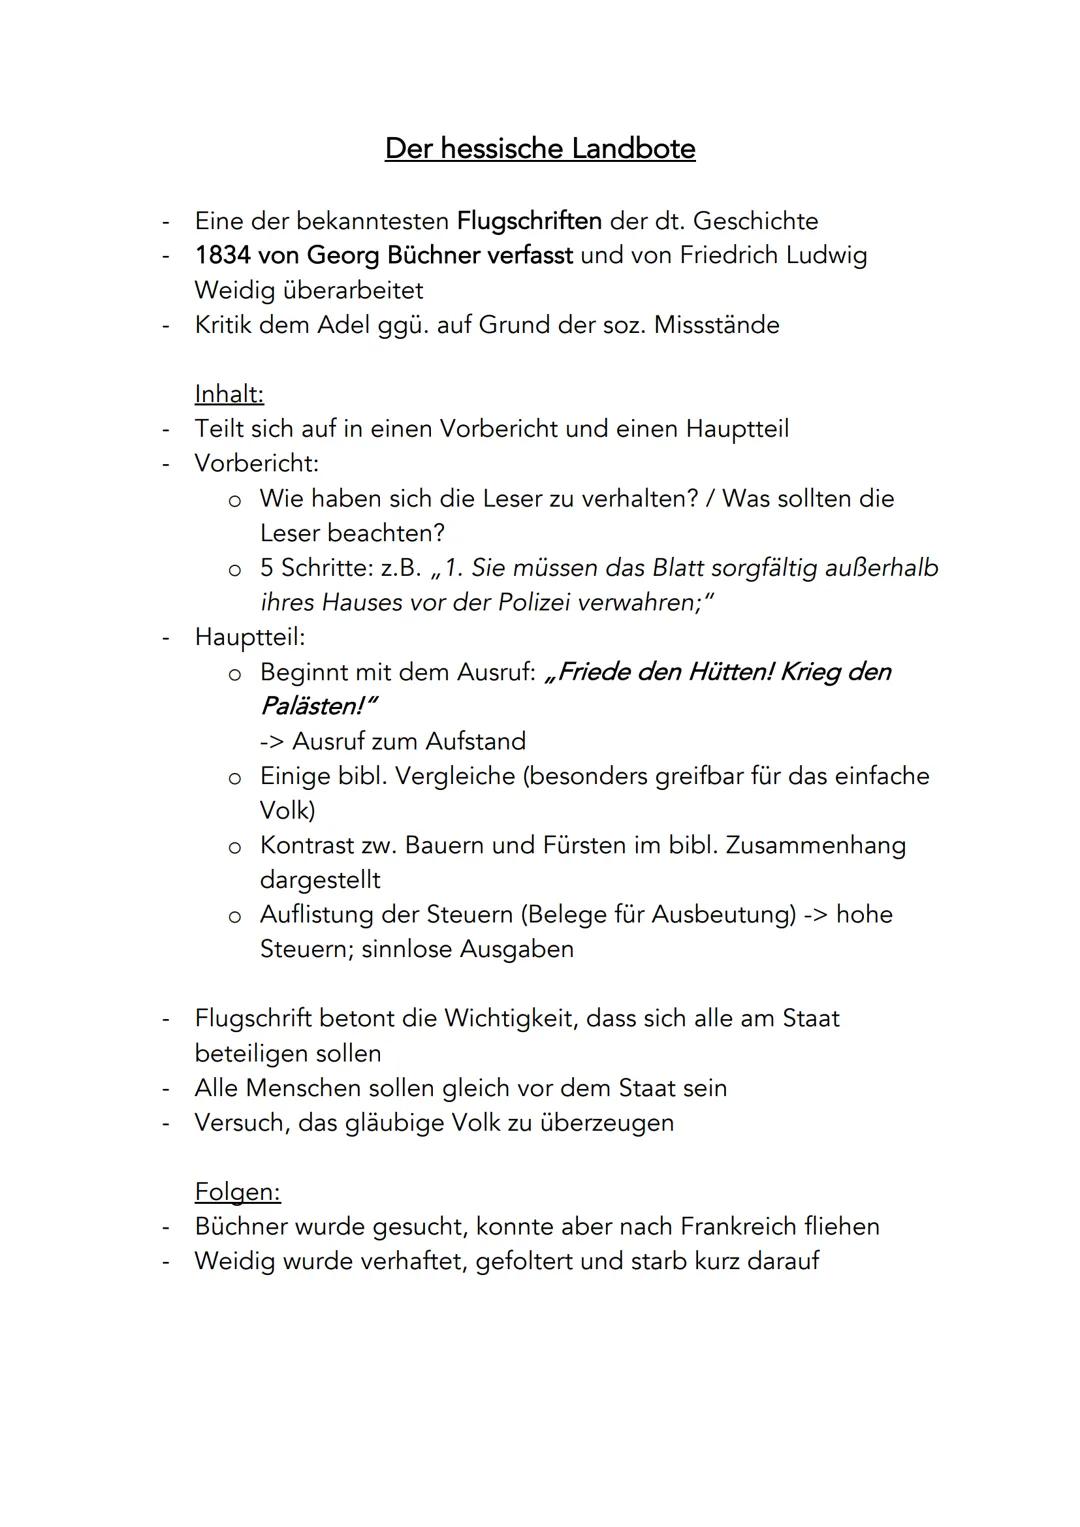 -
Der hessische Landbote
Eine der bekanntesten Flugschriften der dt. Geschichte
1834 von Georg Büchner verfasst und von Friedrich Ludwig
Wei